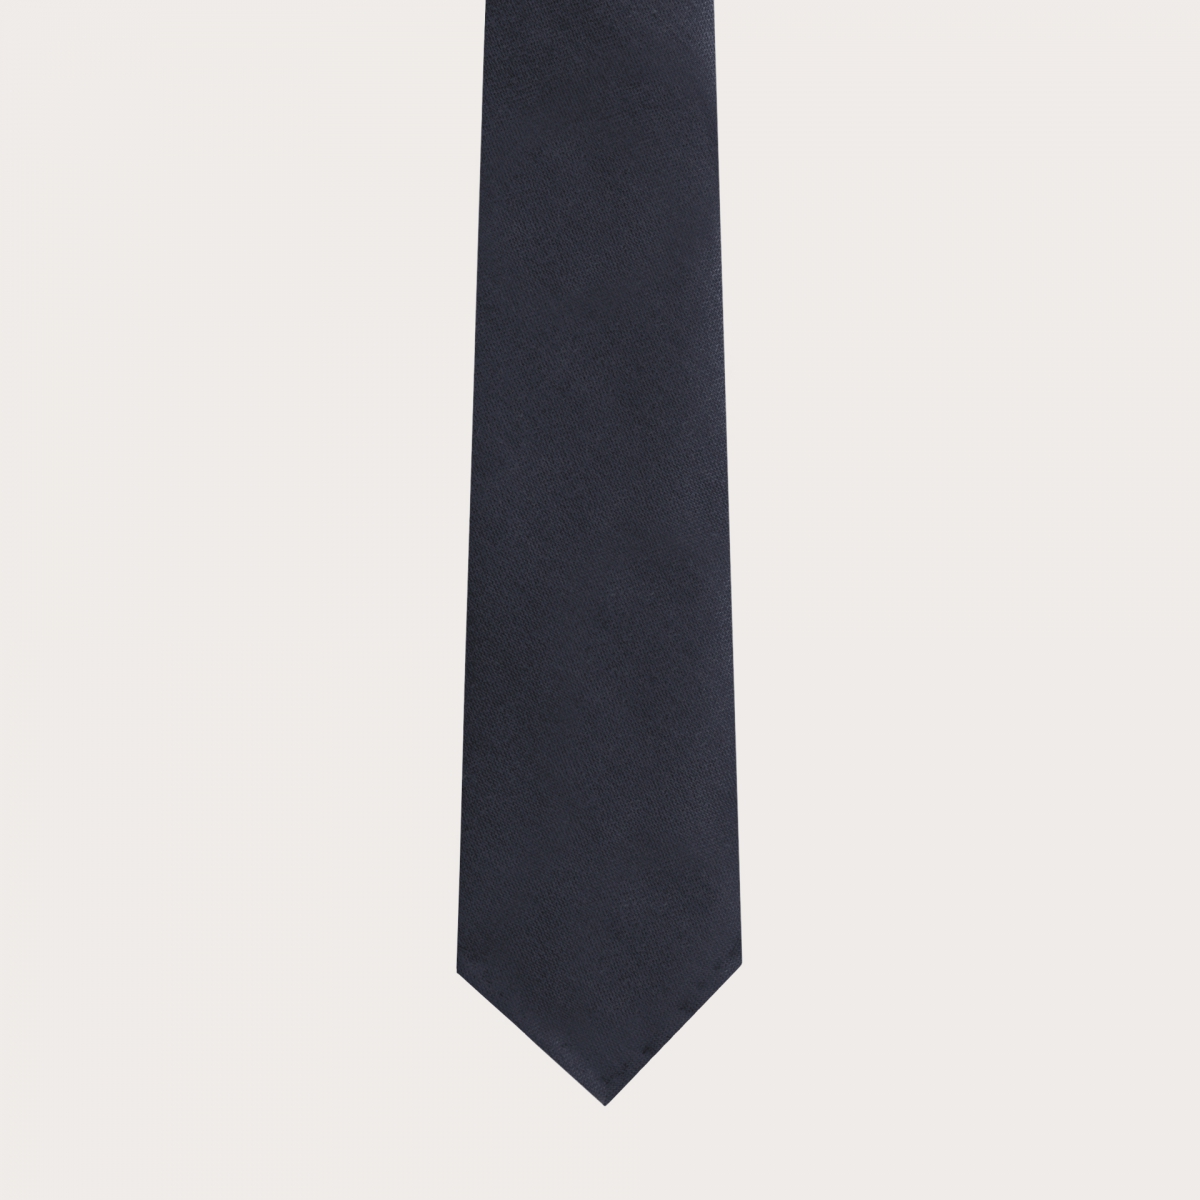 Cravate sans doublure bleue en soie et chavre